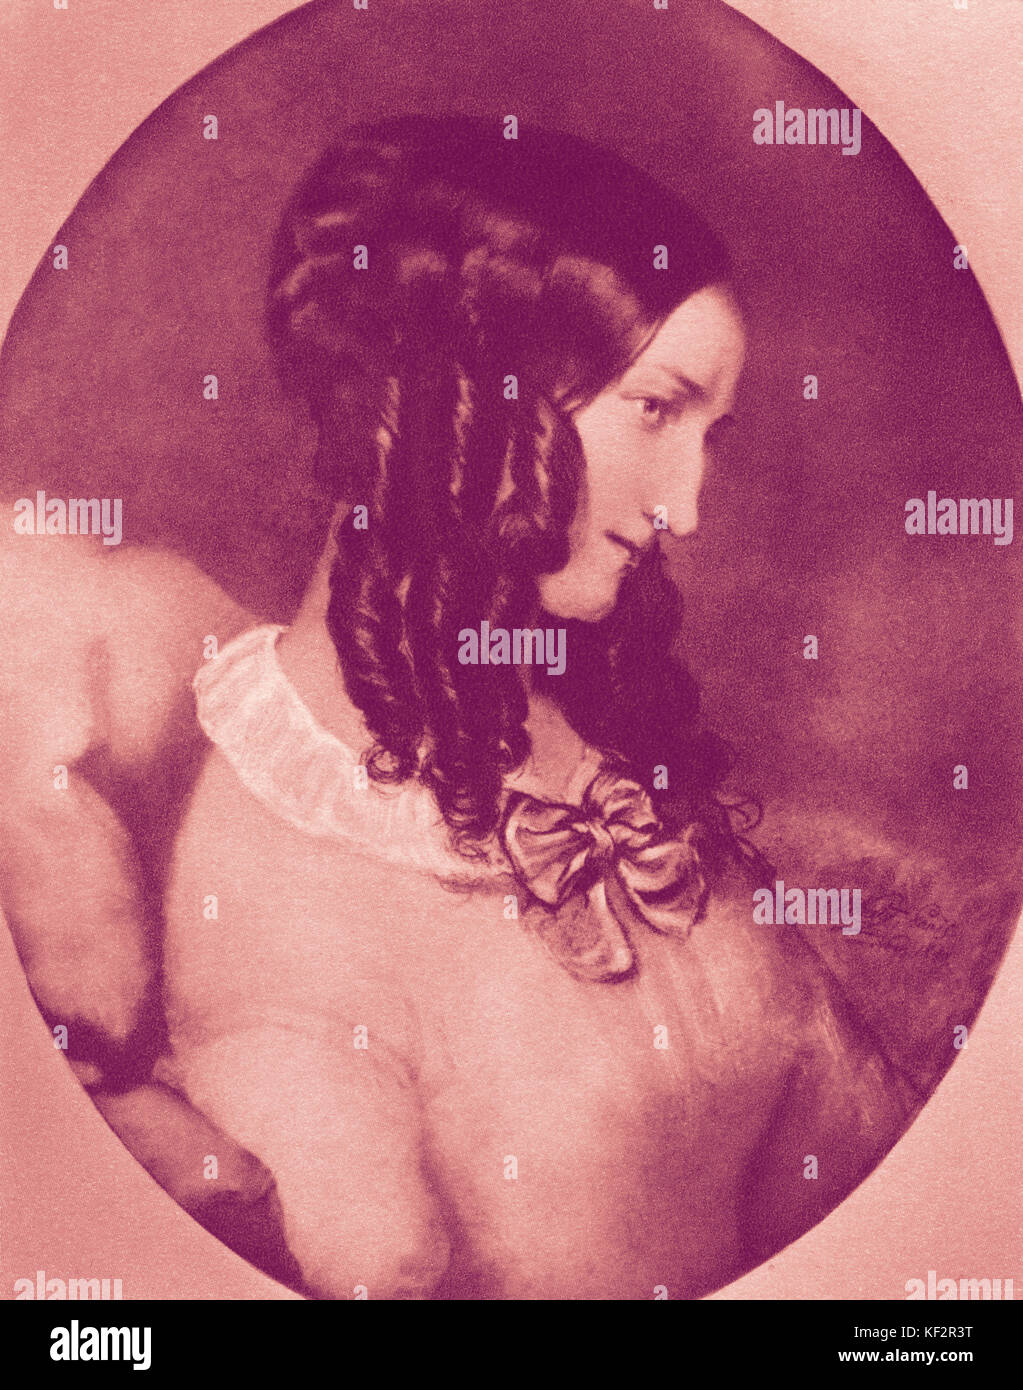 Caecilie Geyer, Richard Wagner's stepsister. Disegno a pastello da E.B. Kietz. CG: 1815- 1893. RW: compositore tedesco & autore, 22 maggio 1813 - 13 febbraio 1883. Foto Stock